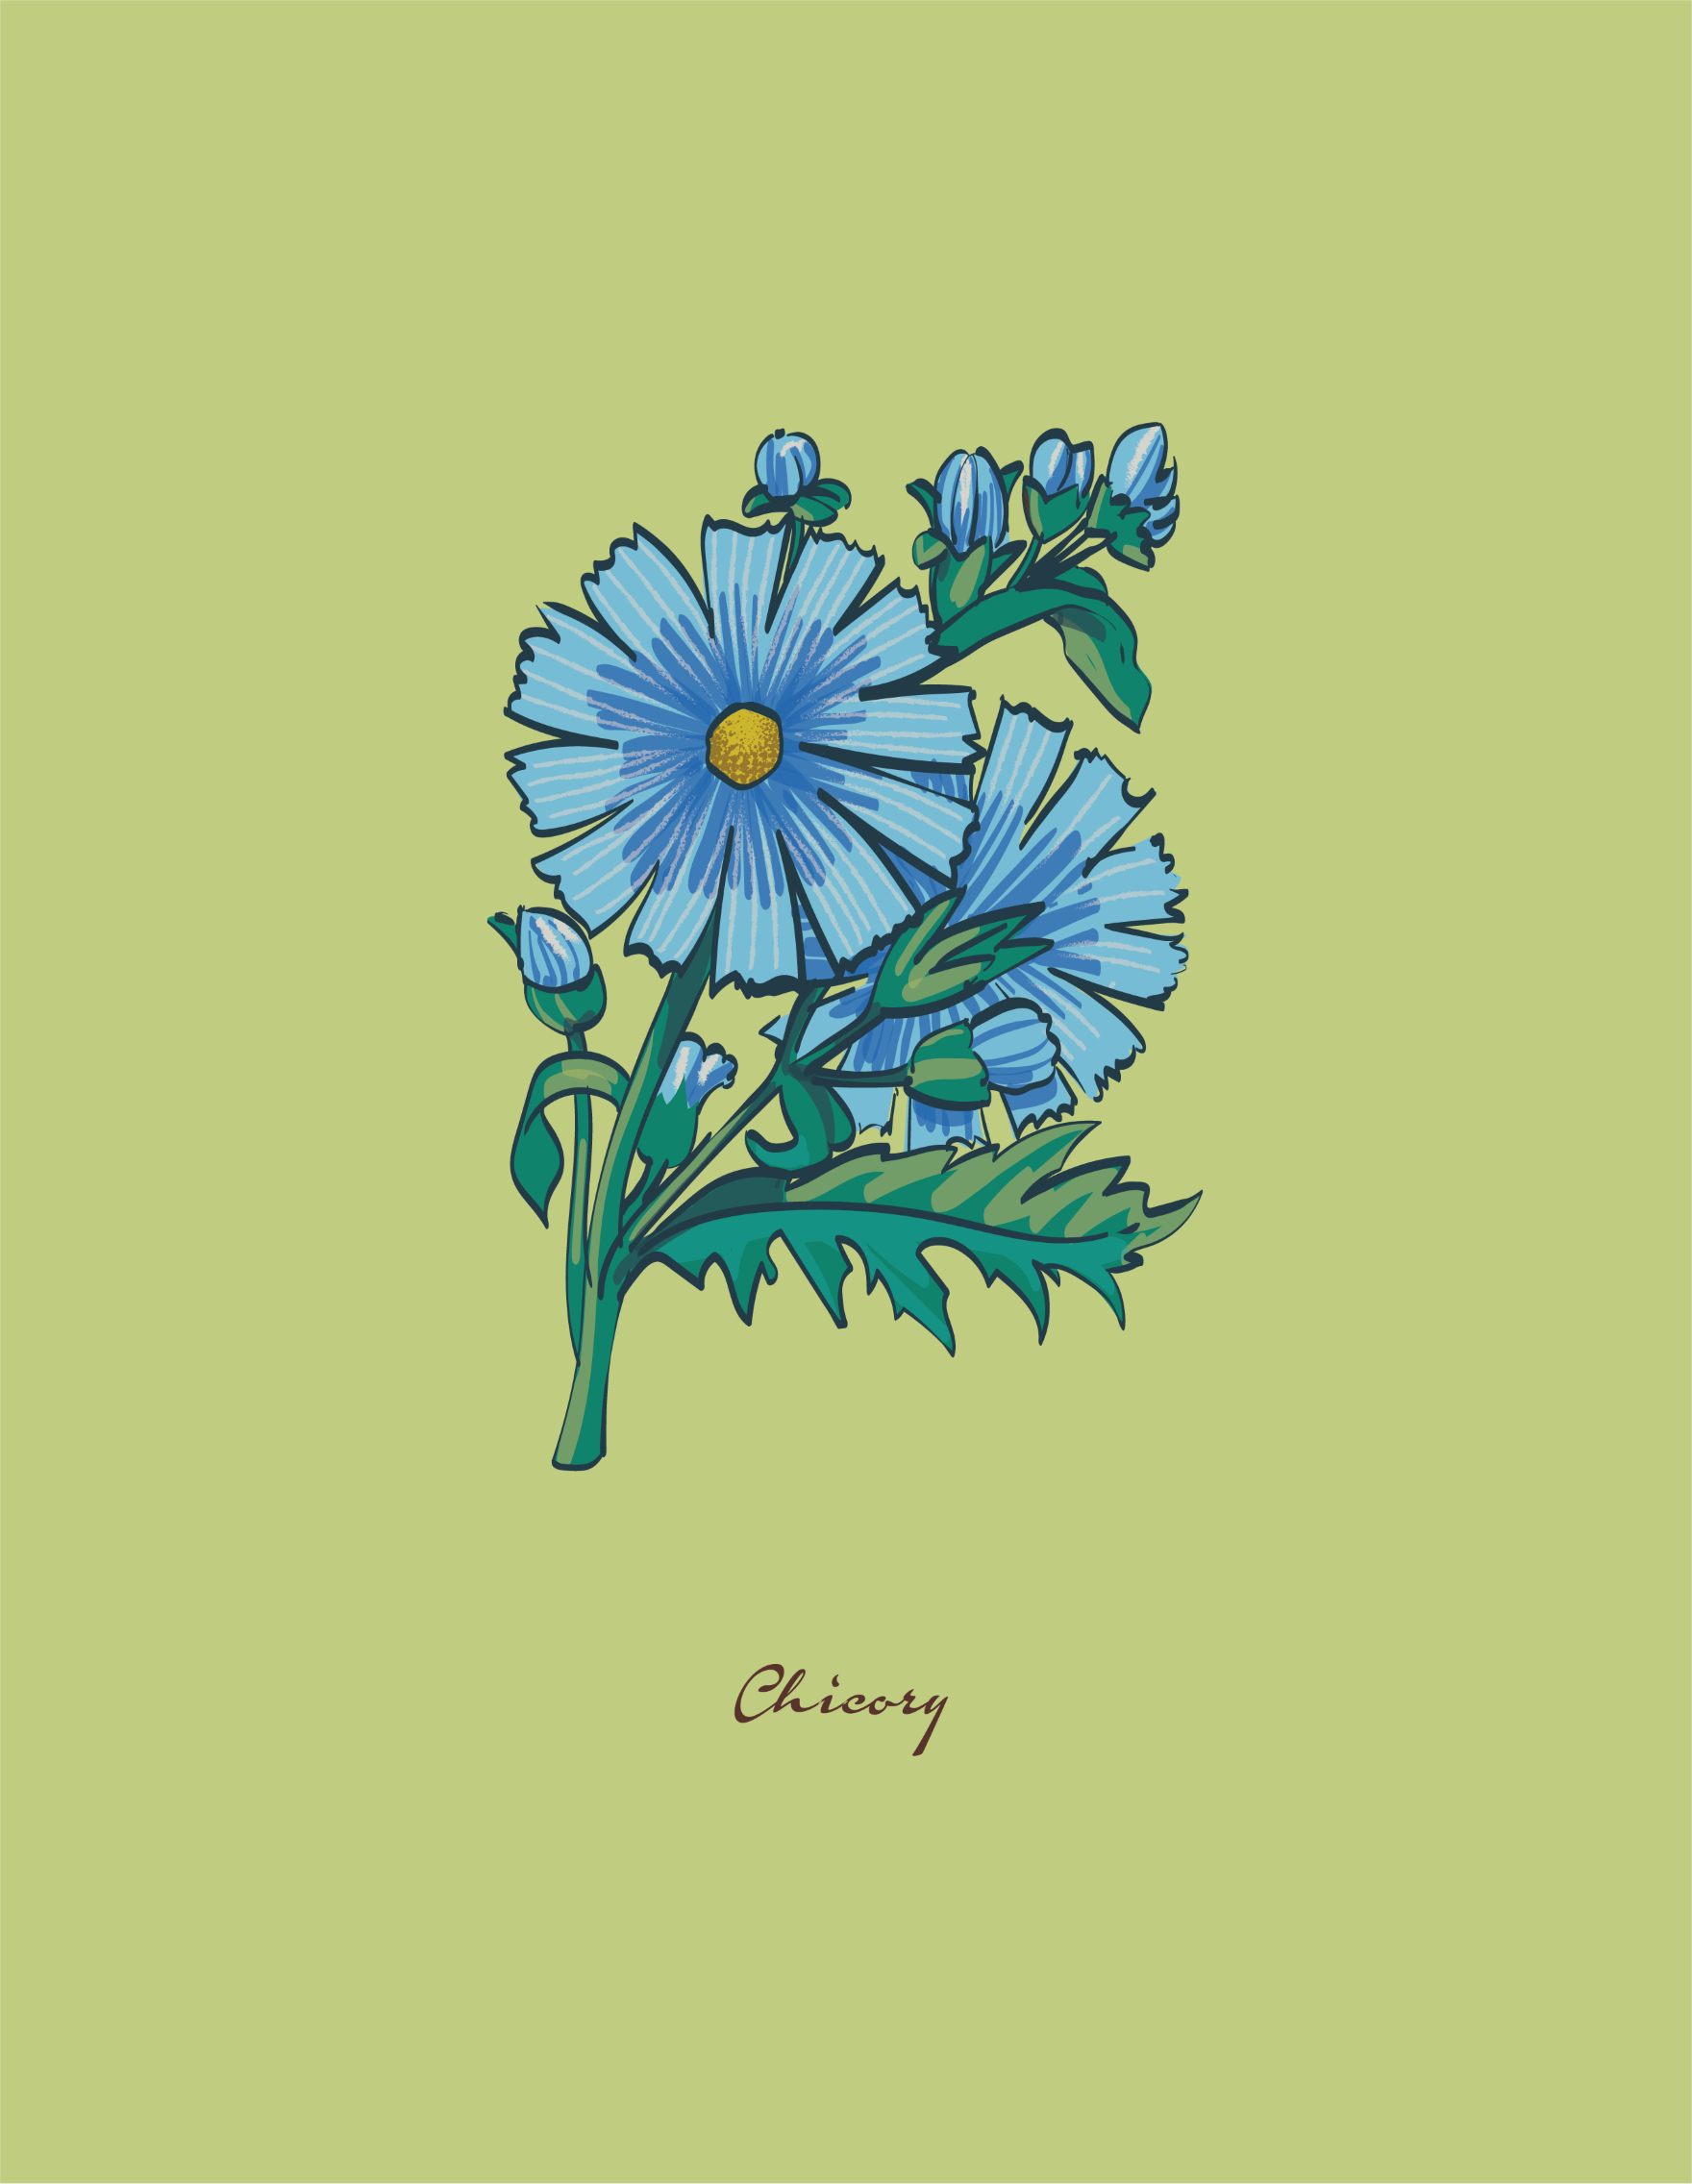 botanical illustration of a Chicory flower